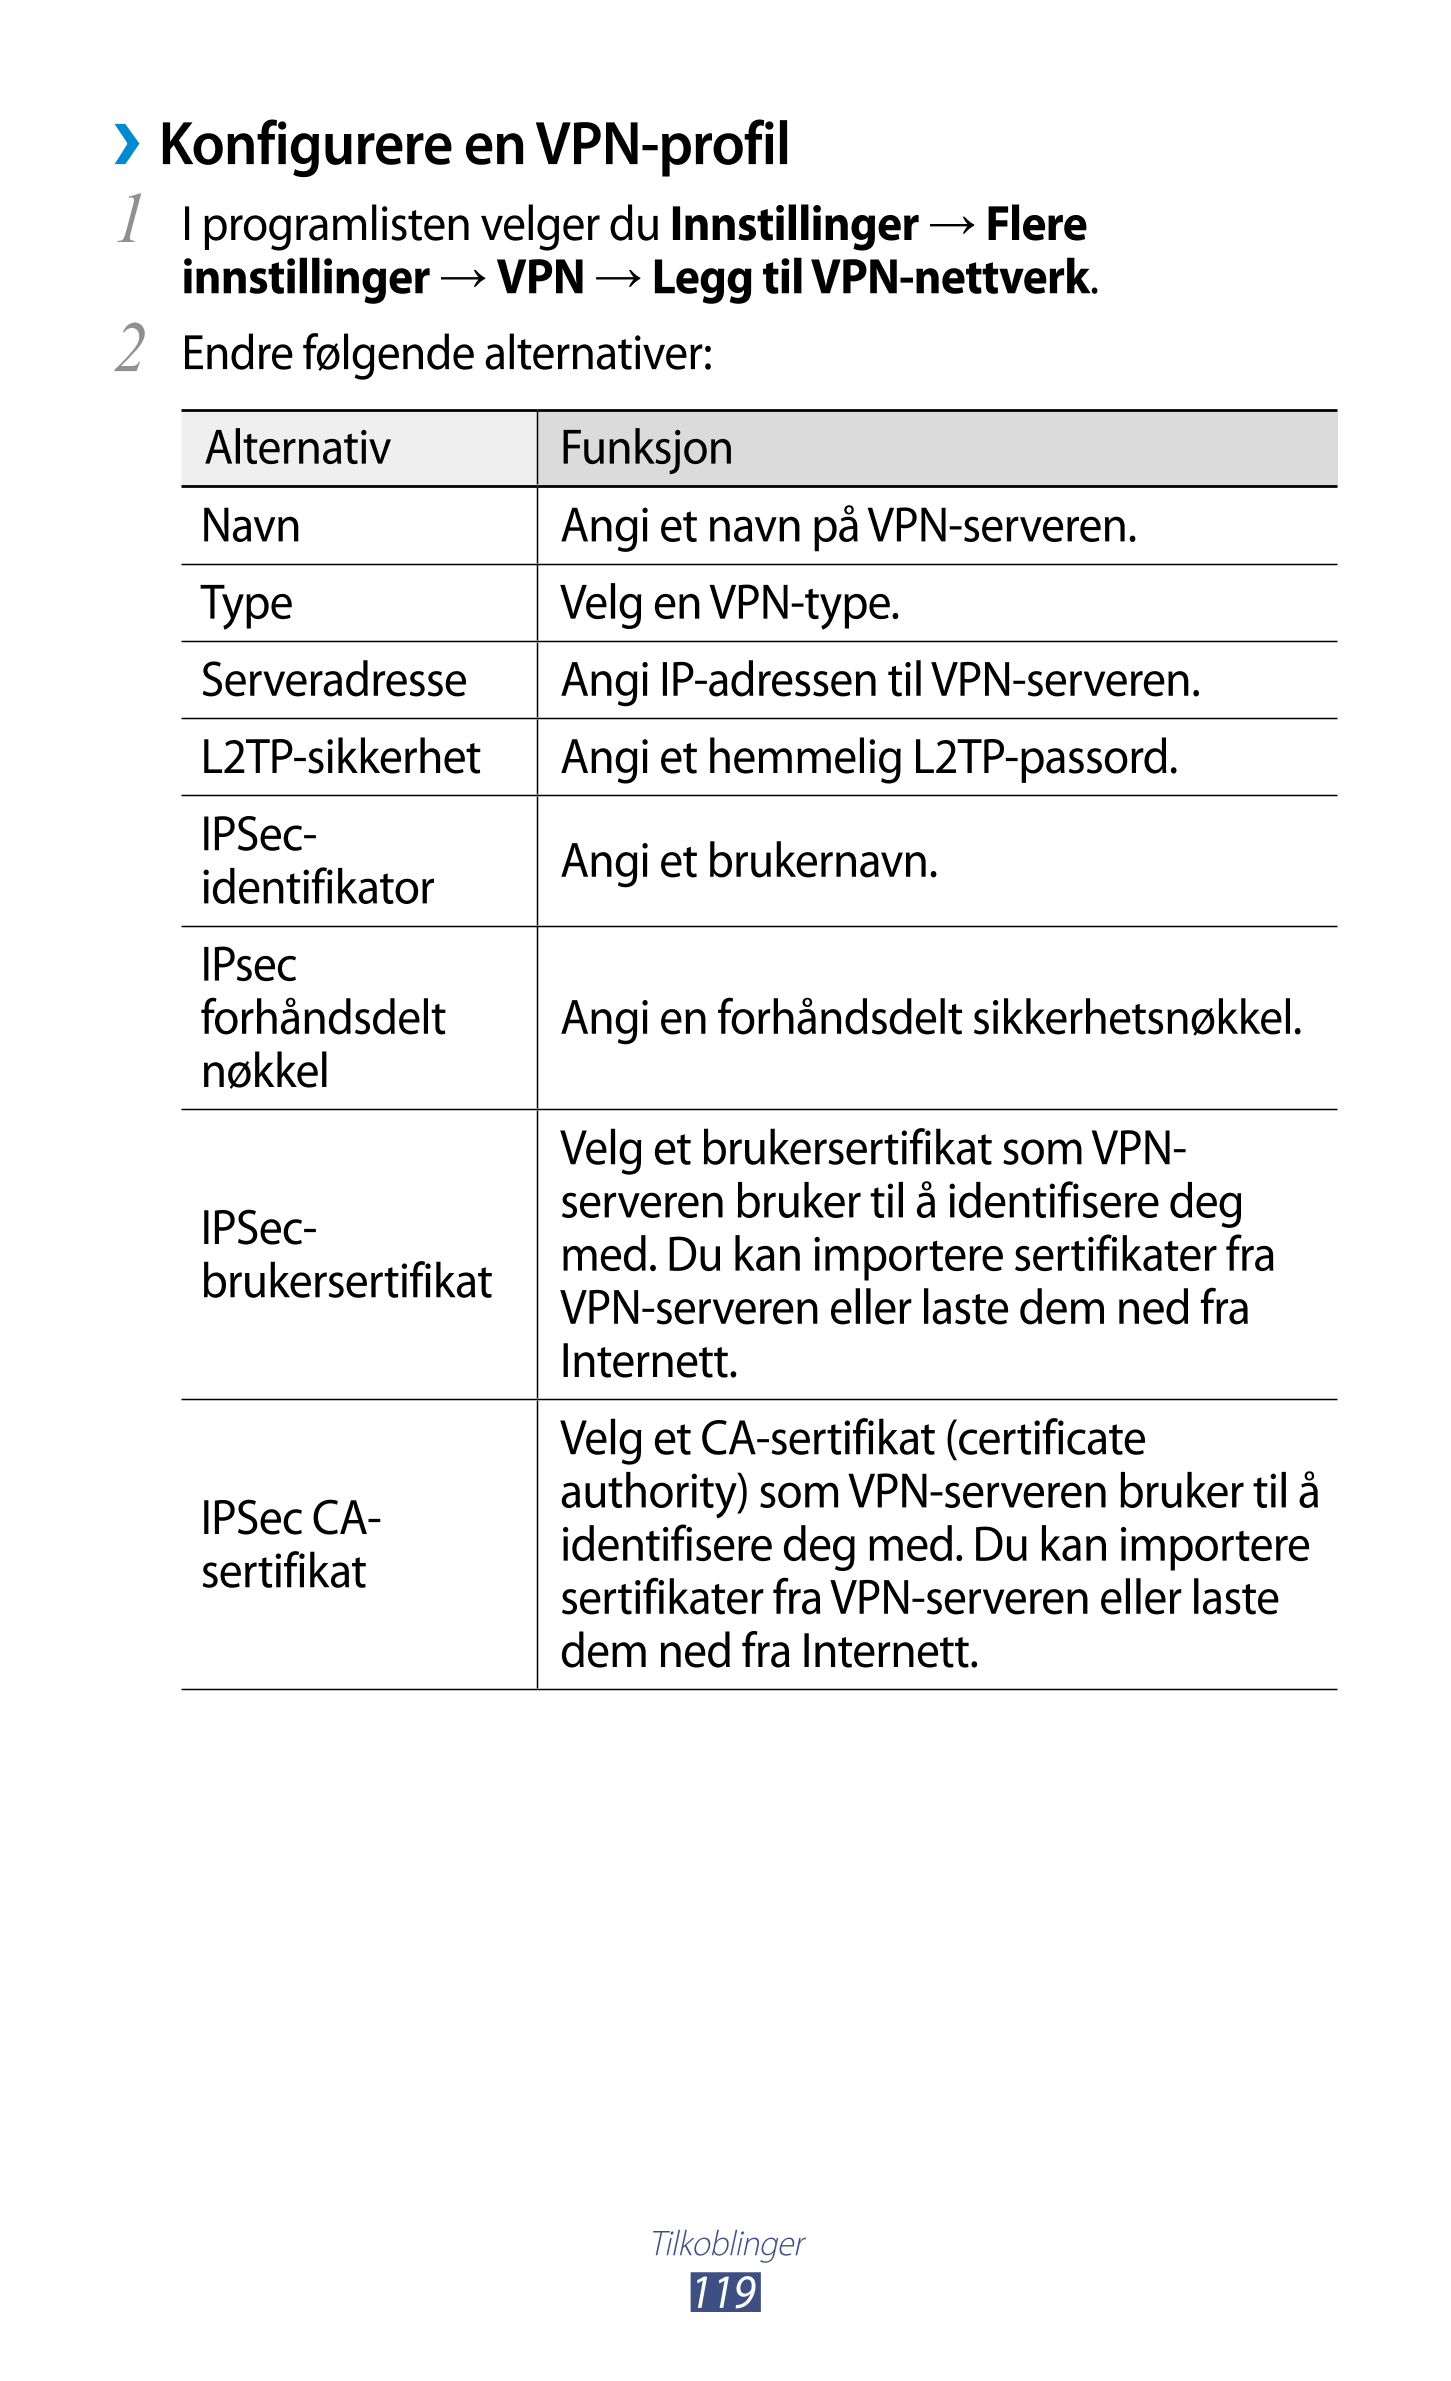 › Konfigurere en VPN-profil
1  I programlisten velger du  Innstillinger  →  Flere 
innstillinger  →  VPN  →  Legg til VPN-nettve